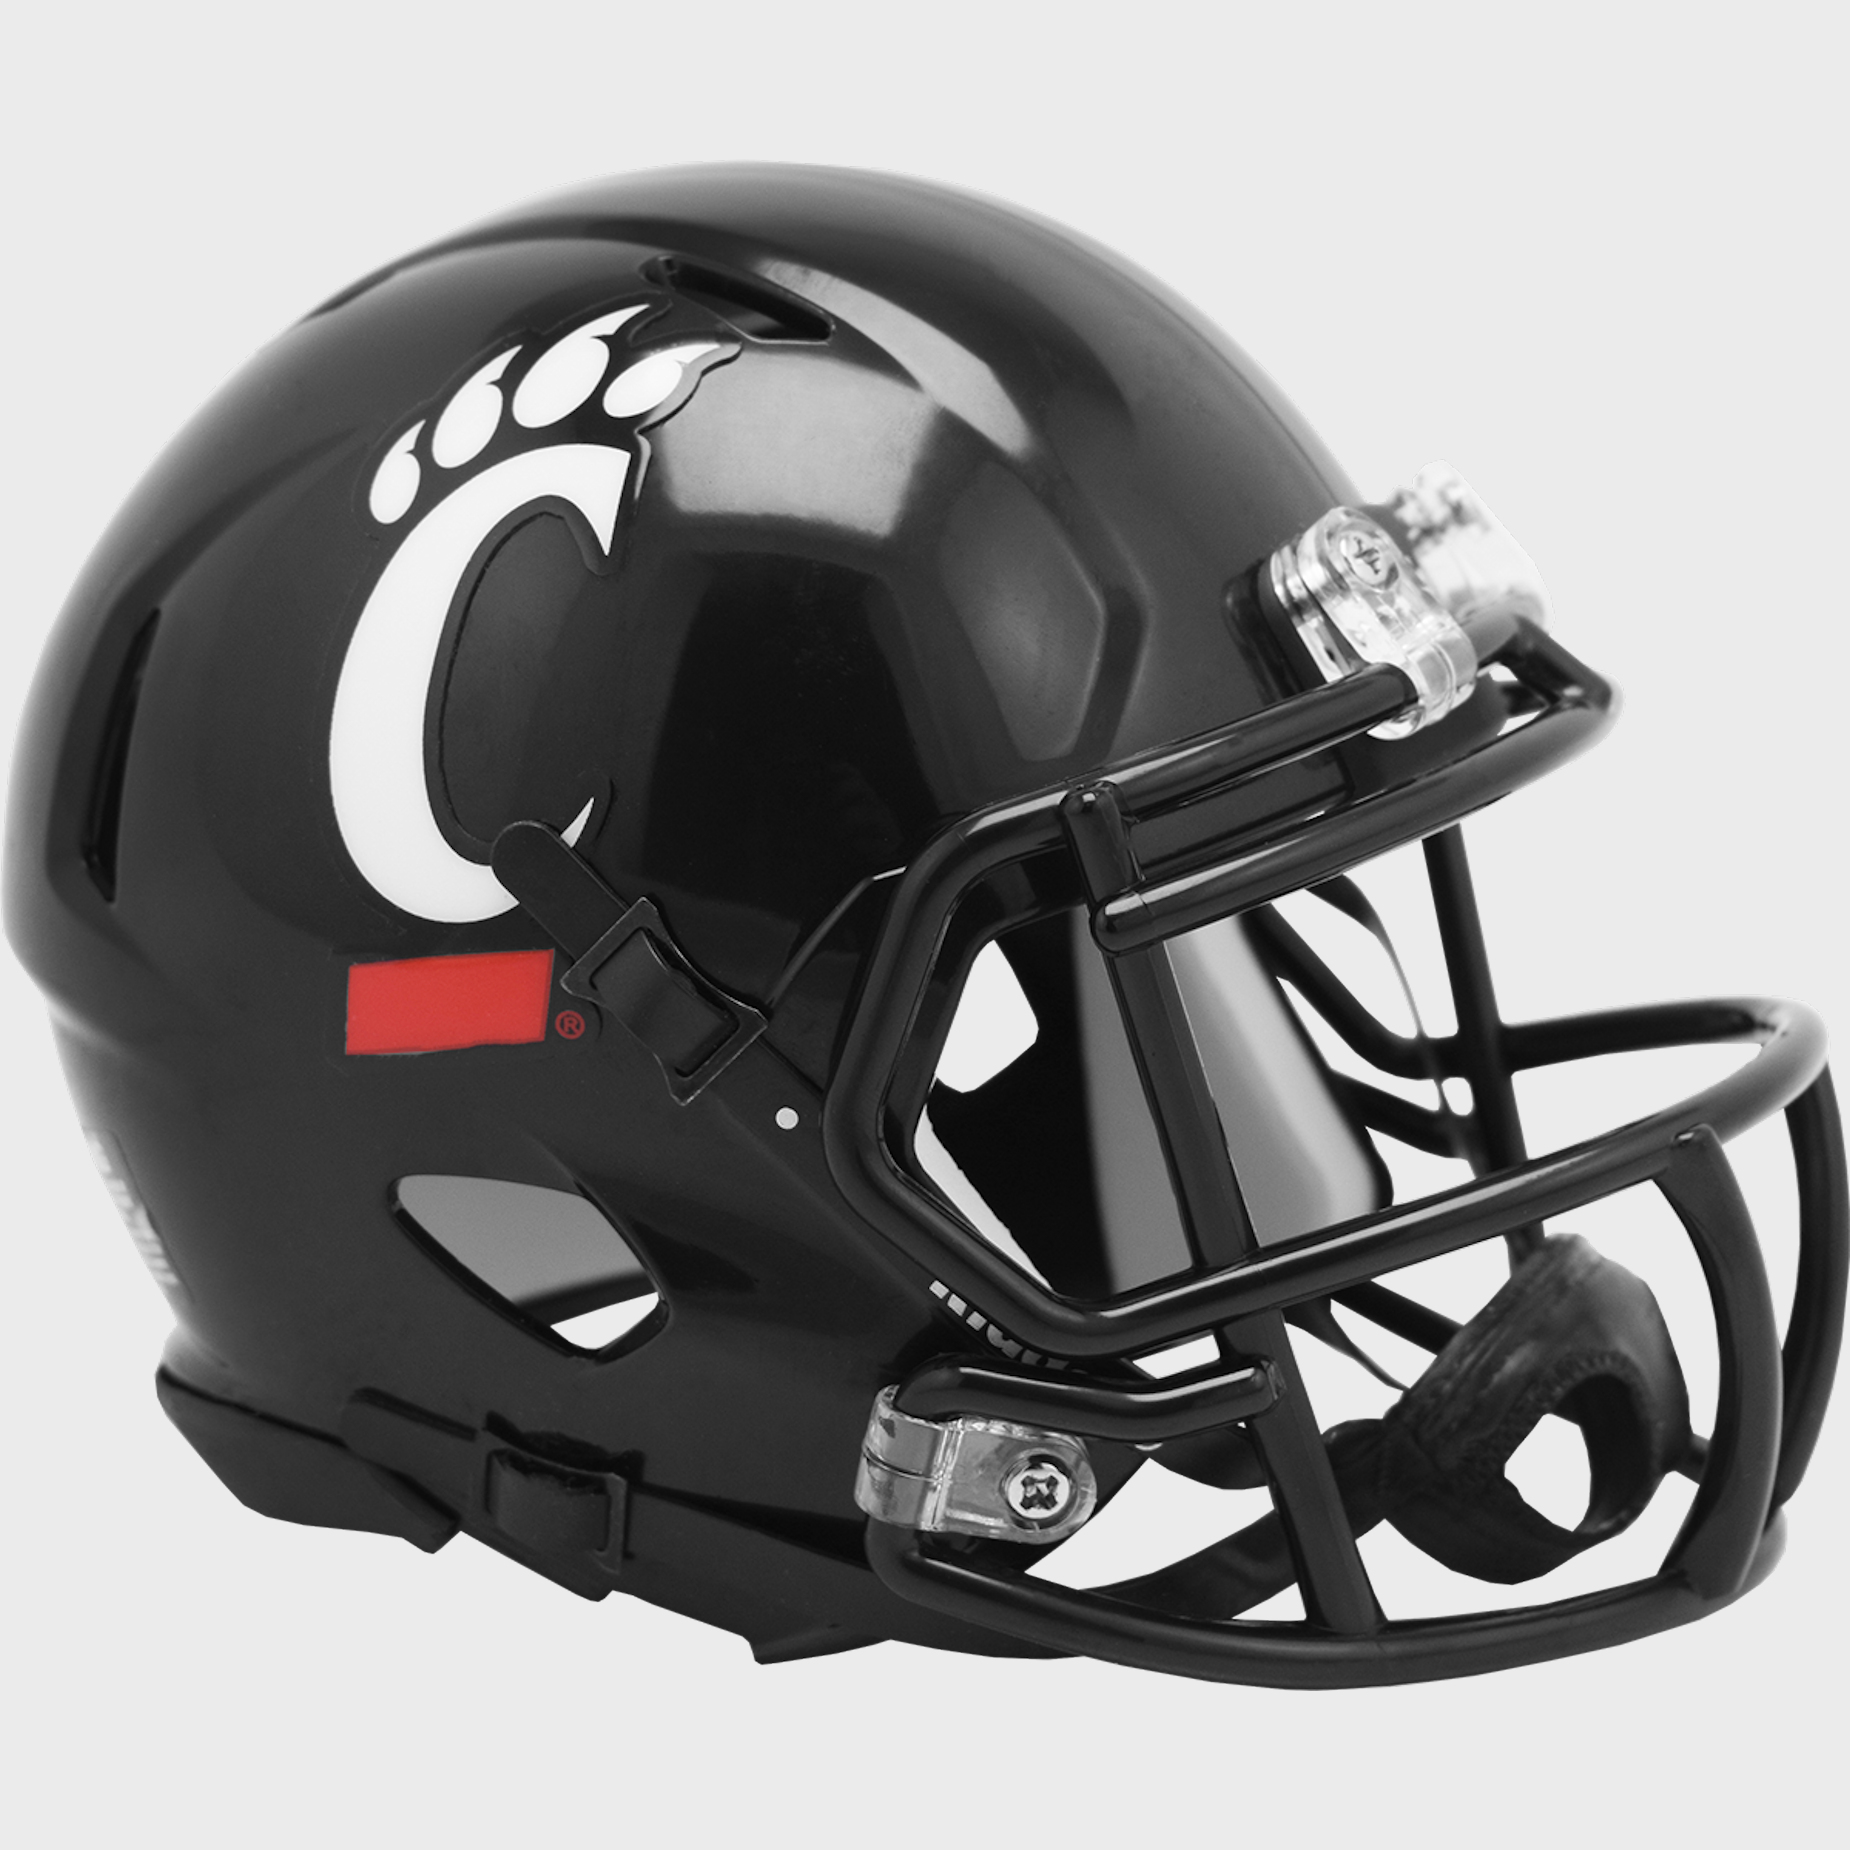 Cincinnati Bearcats NCAA Mini Speed Football Helmet